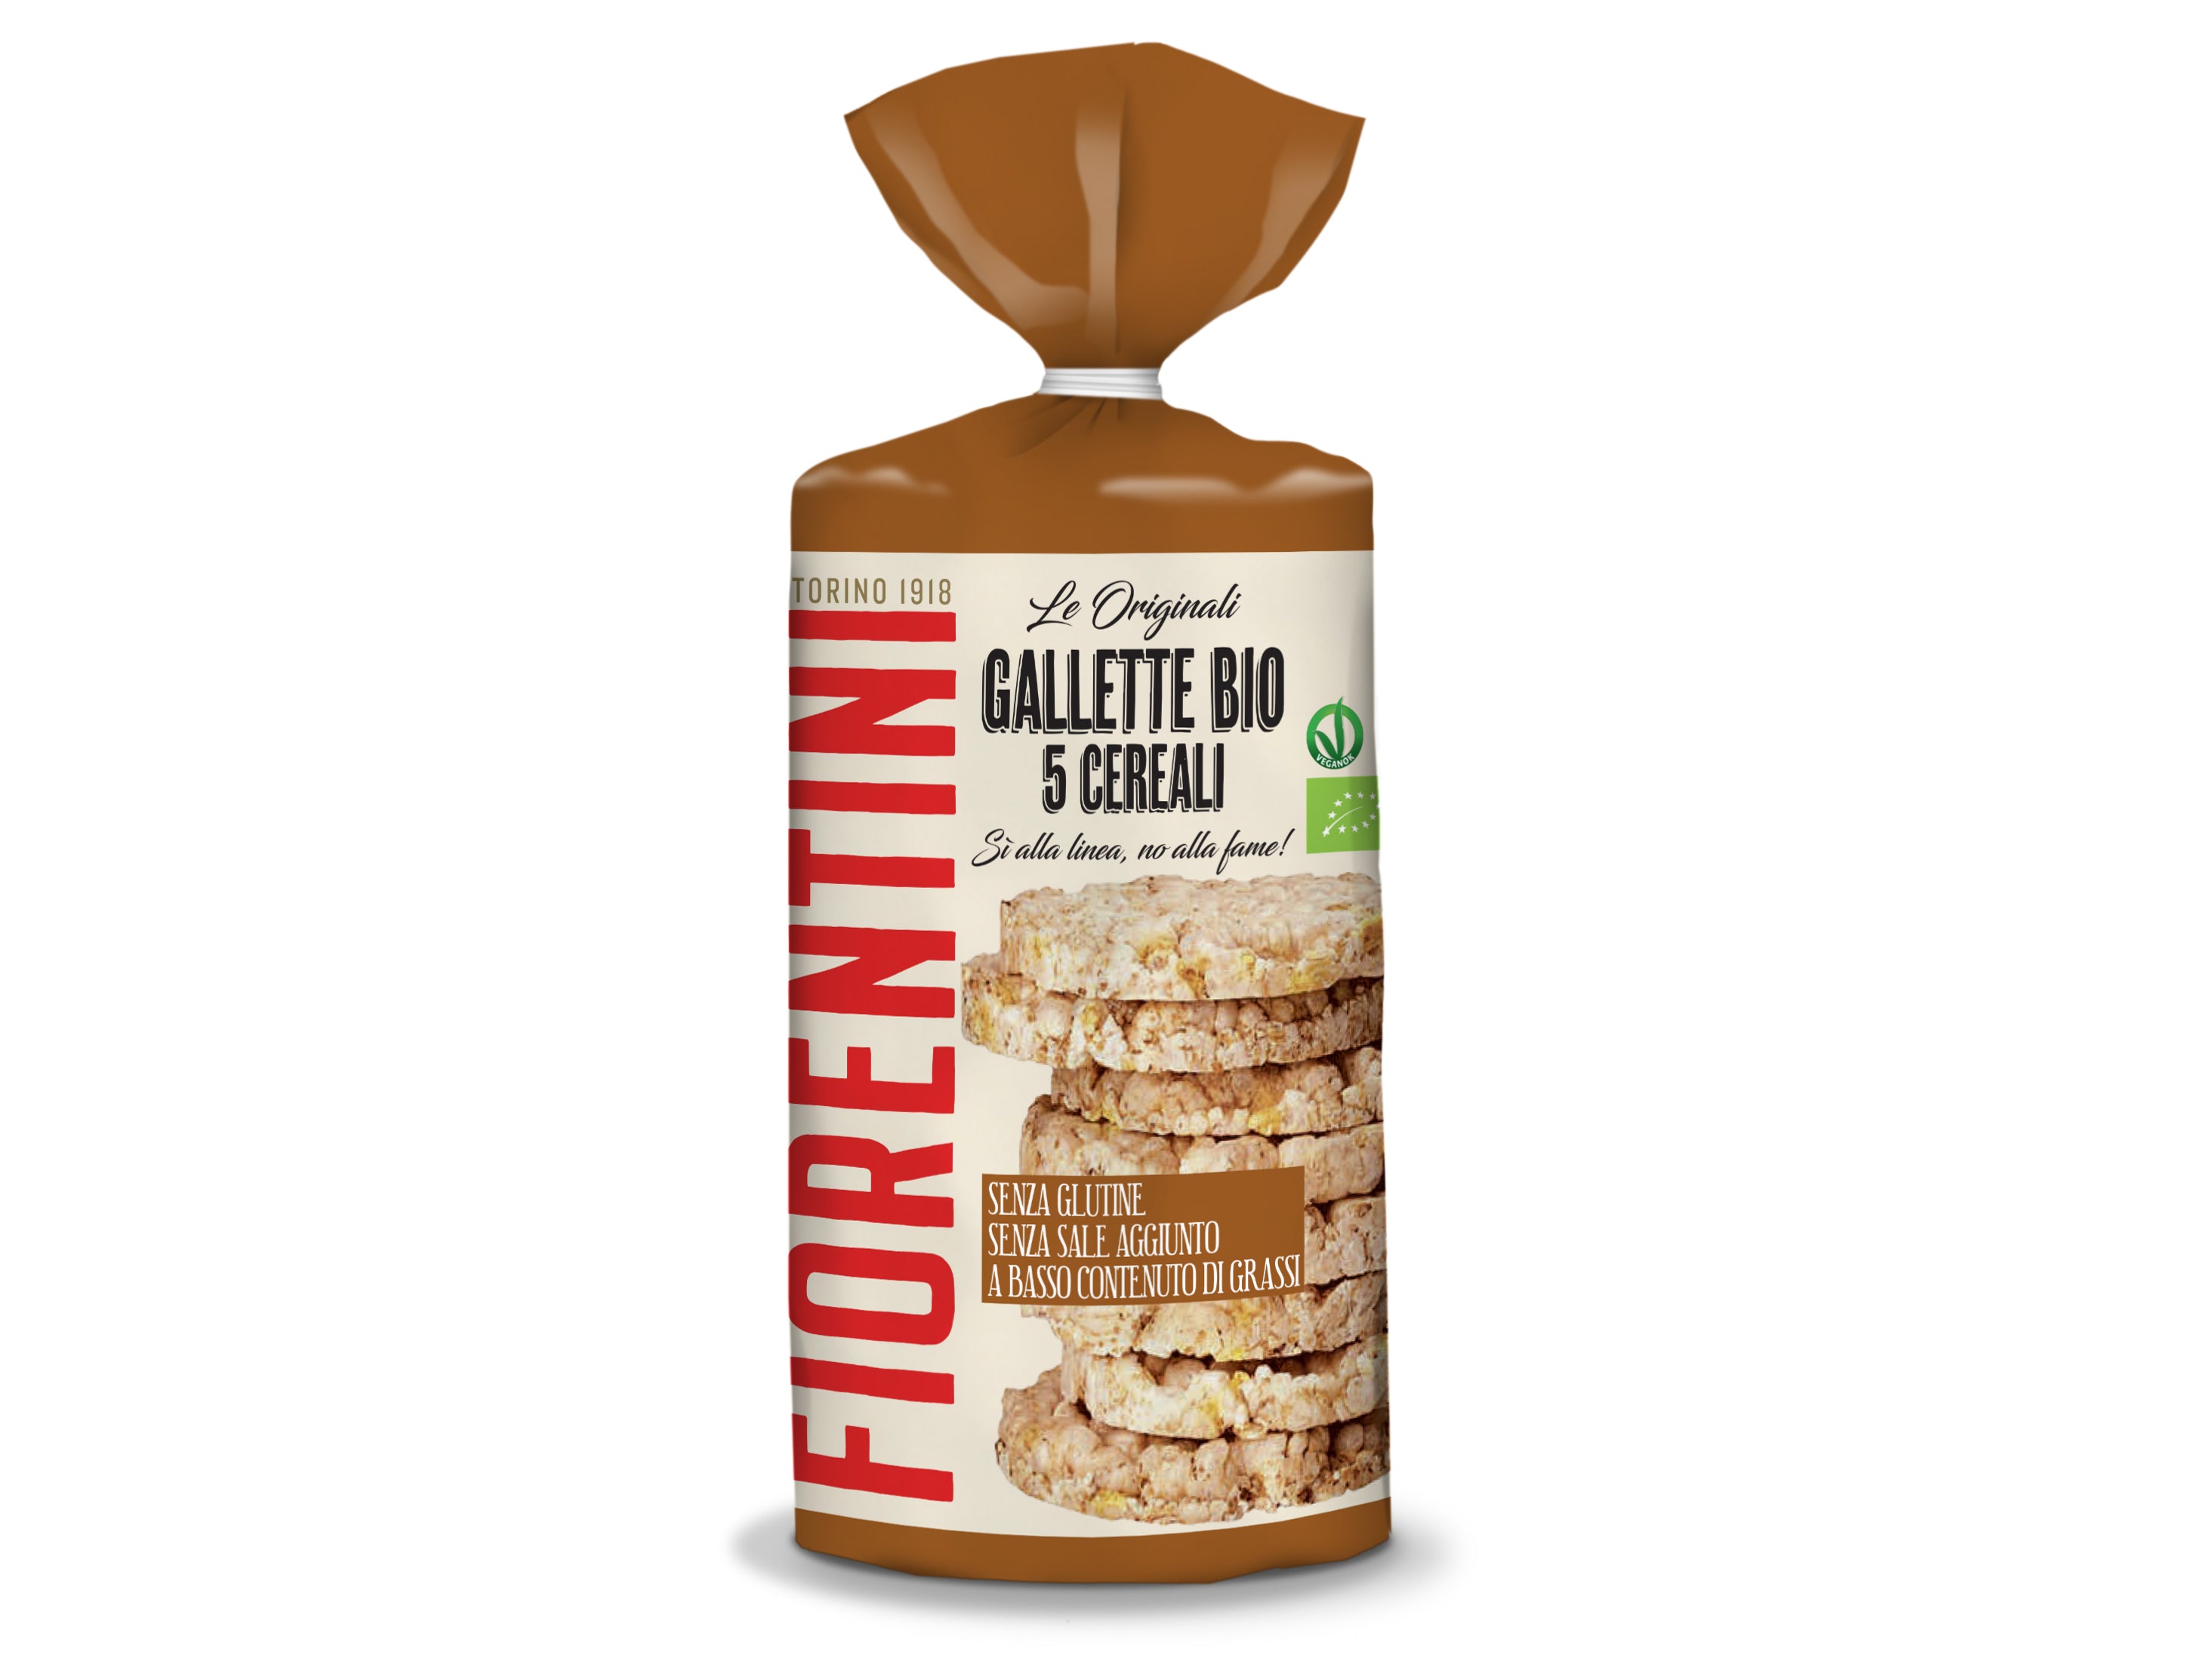 Fiorentini bio gluten-free galette 5 cereals, vegan